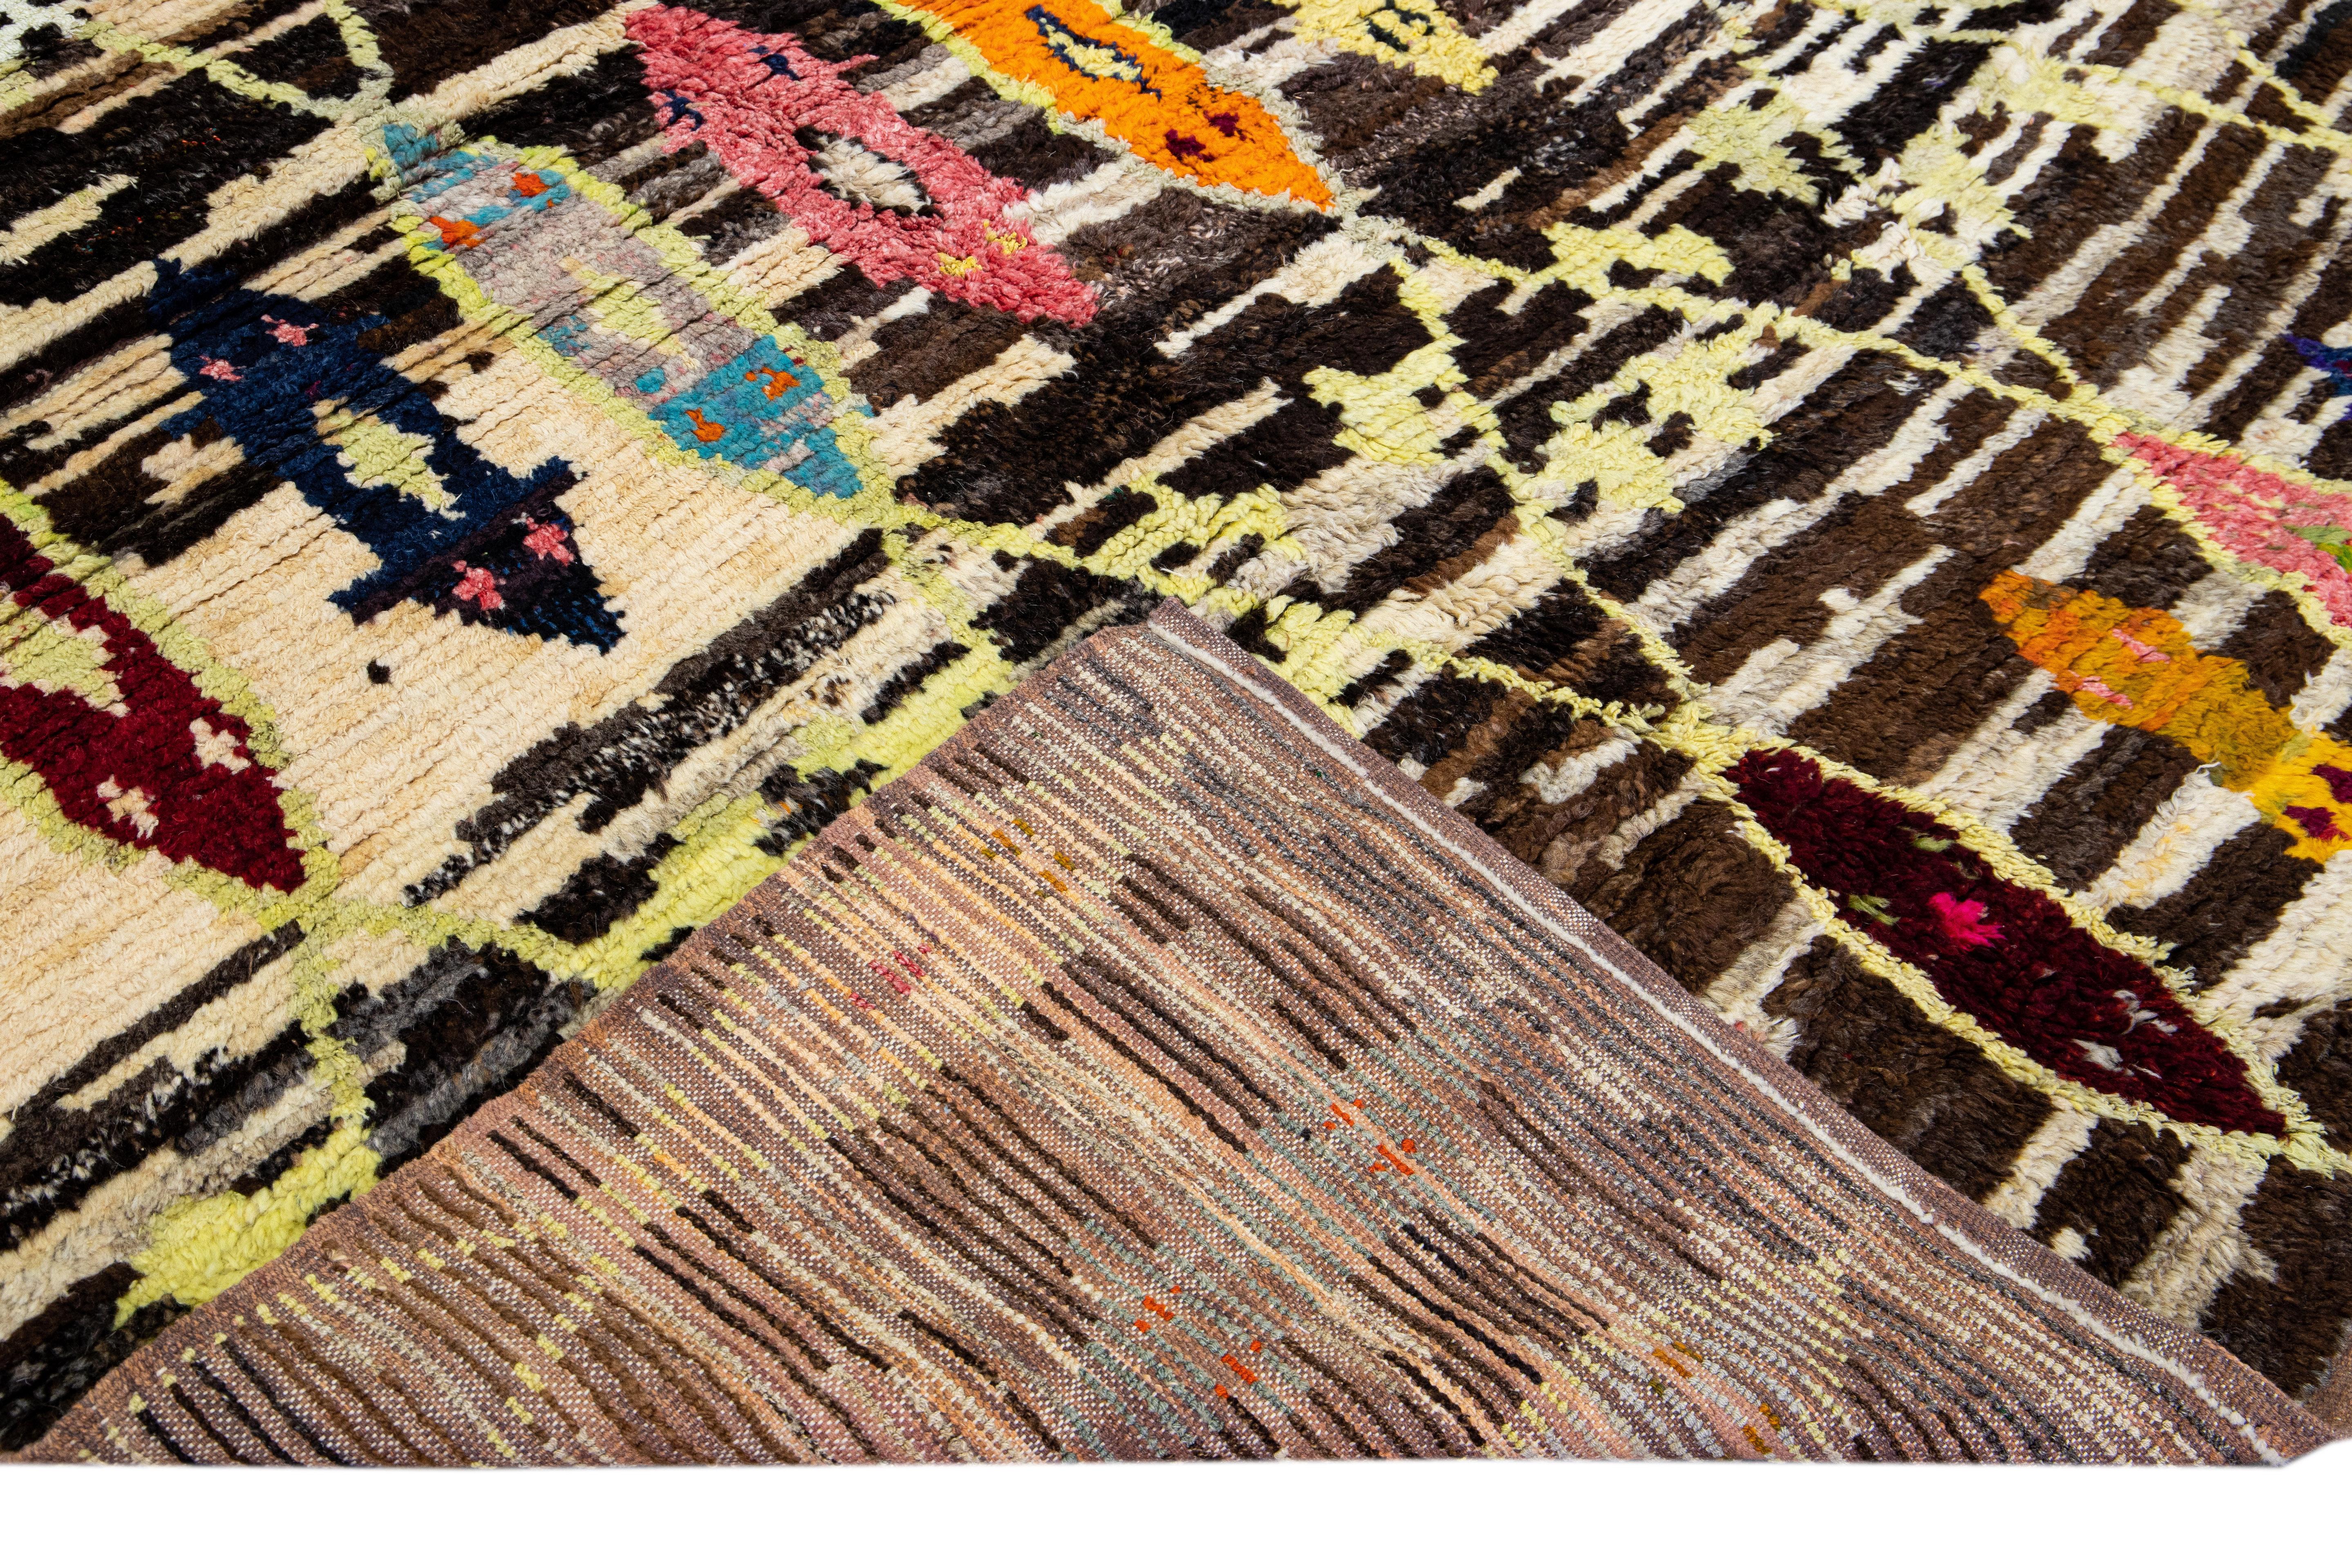 Wunderschöner türkischer Tulu-Teppich aus handgefertigter Wolle mit einem beigen und braunen Feld. Dieser moderne Teppich mit mehrfarbigen Akzenten weist ein wunderschönes geometrisches Tribal-Muster auf.

Dieser Teppich misst: 10'1 x